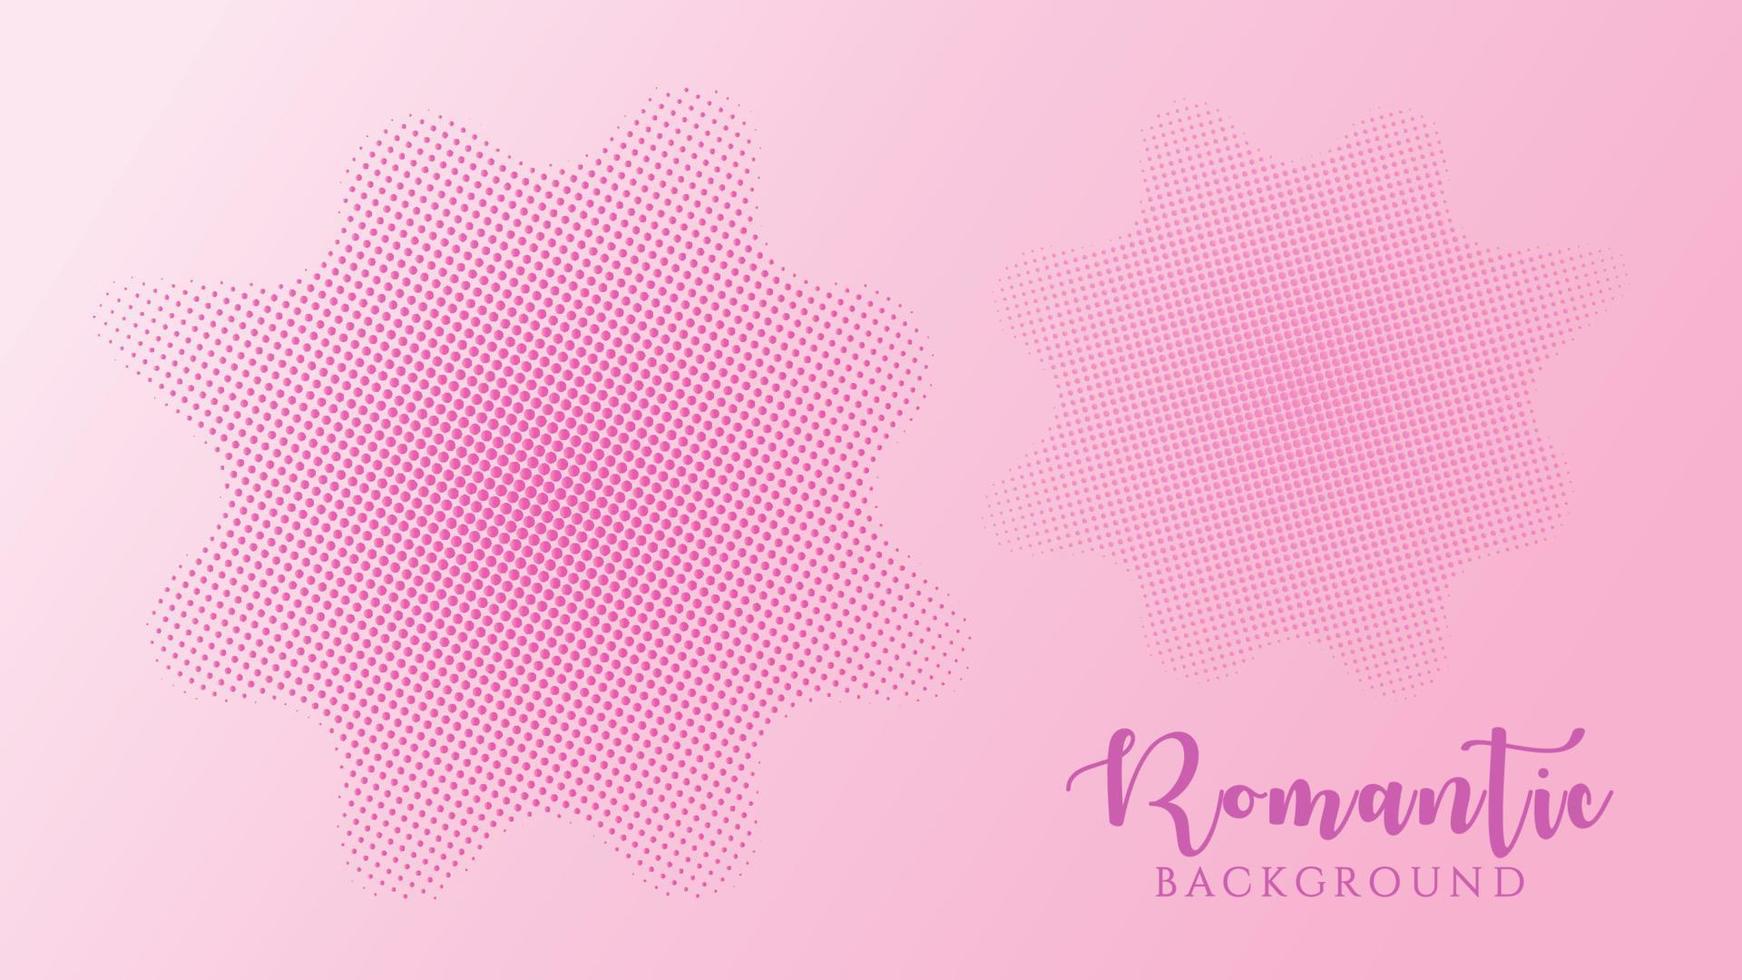 plantilla de diseño de fondo de medio tono, arte pop, ilustración de patrón de puntos líquidos abstractos, elemento de textura retro, gradación violeta rosa, colores románticos, día de San Valentín, lunares, lunares vector